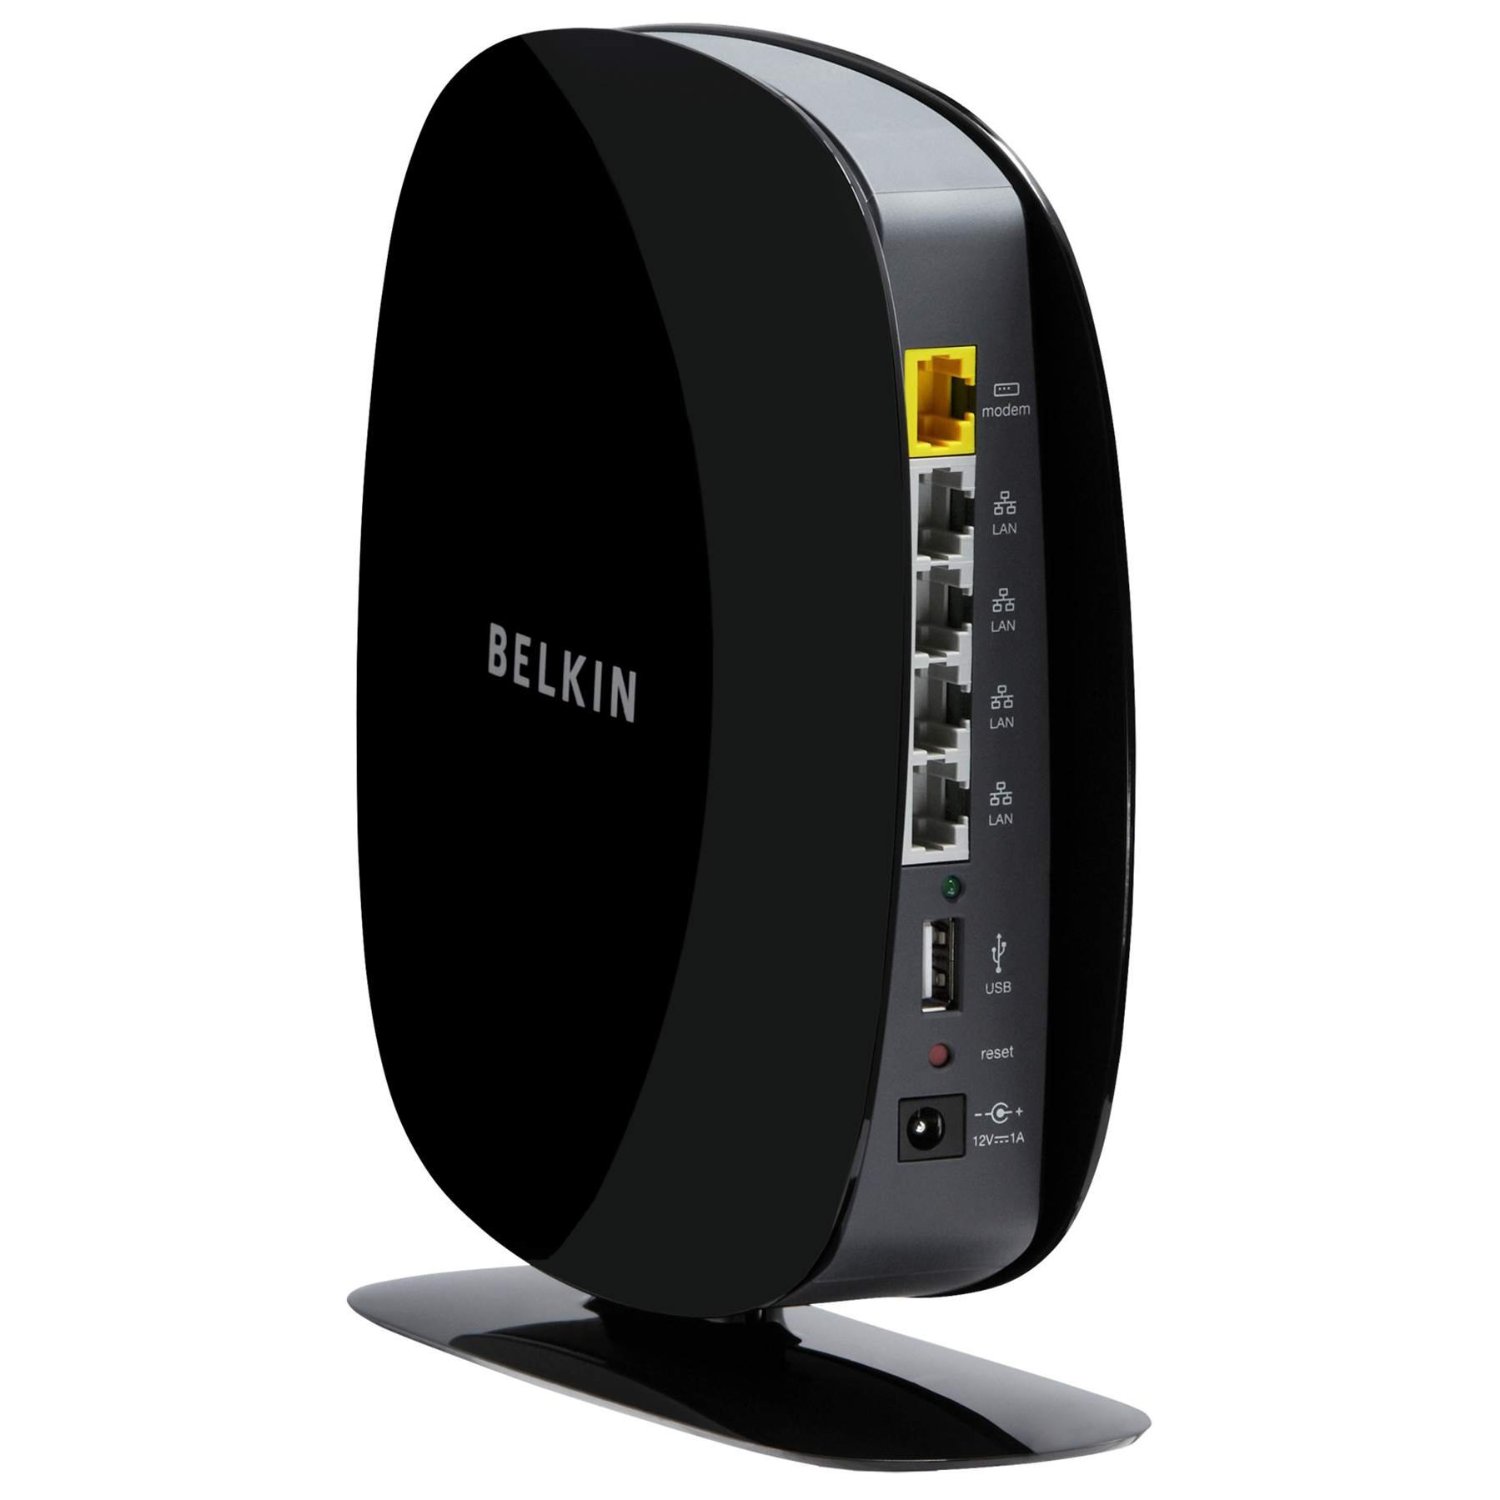 Belkin Wireless Driver Download